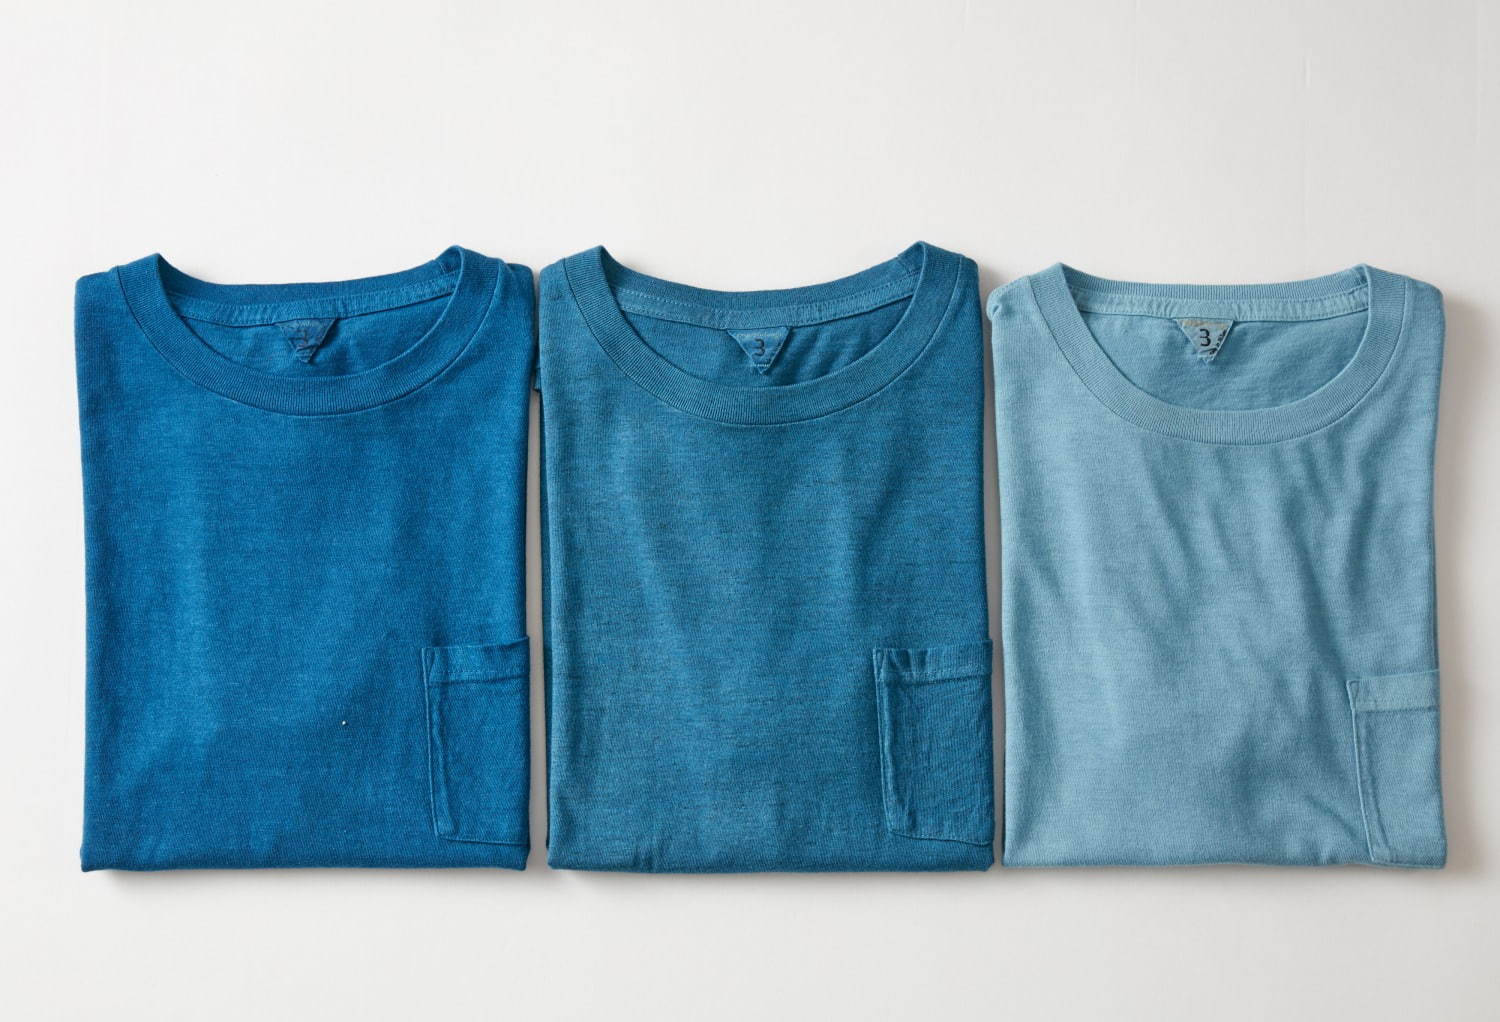 フィルメランジェ 藍染め職人集団リトマス 天然藍で染めたtシャツやスカート限定販売 ファッションプレス